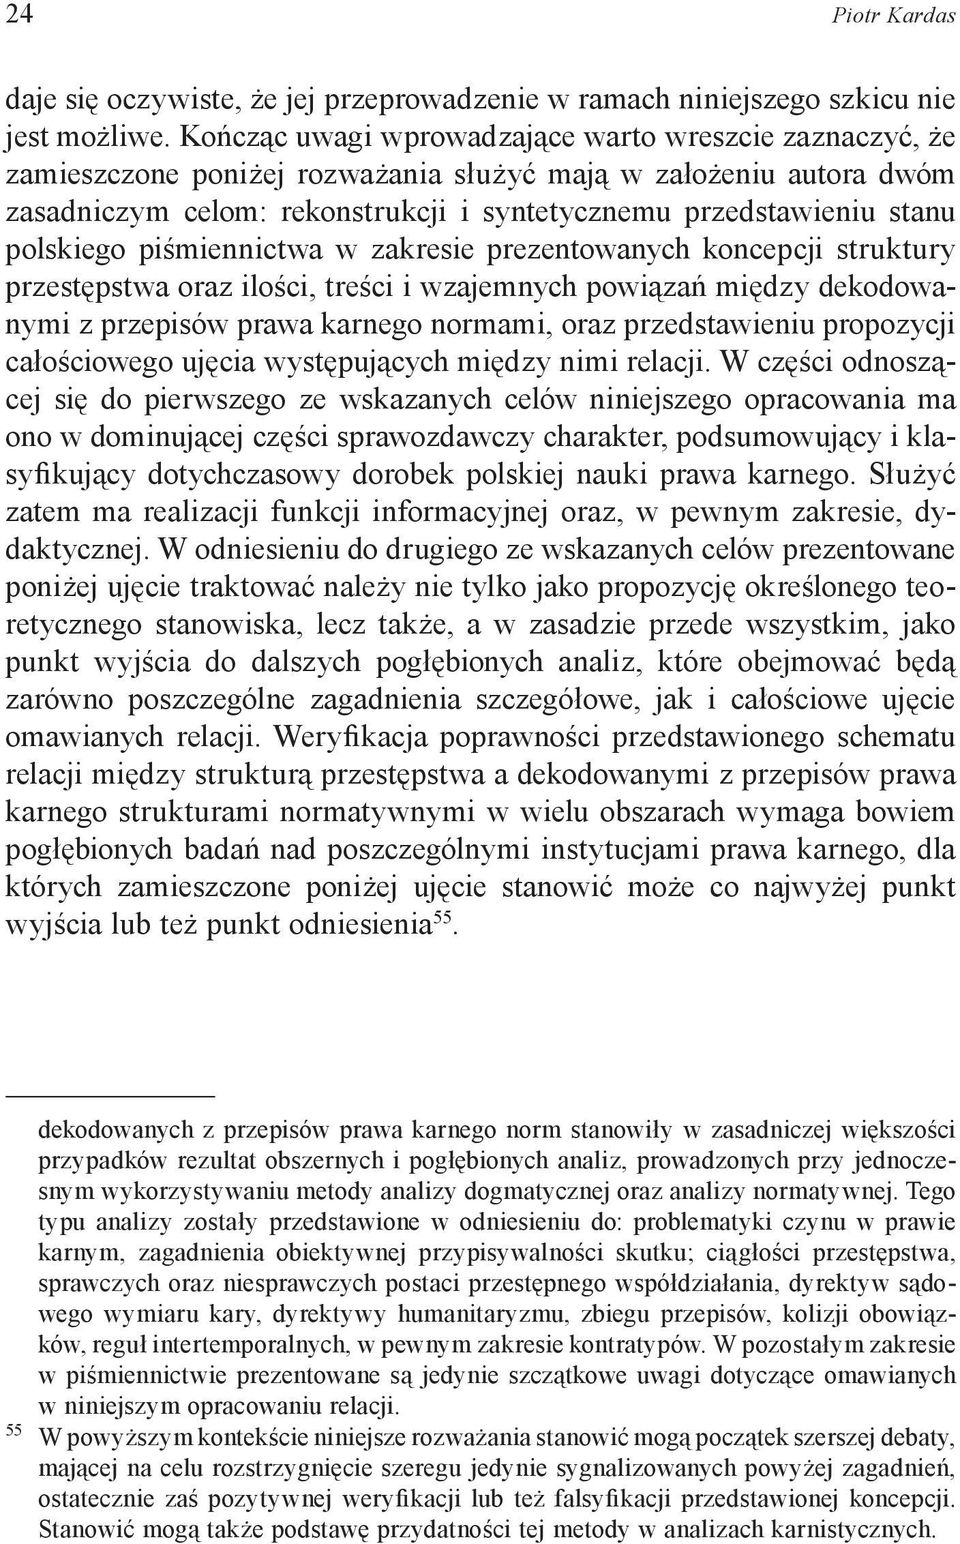 polskiego piśmiennictwa w zakresie prezentowanych koncepcji struktury przestępstwa oraz ilości, treści i wzajemnych powiązań między dekodowanymi z przepisów prawa karnego normami, oraz przedstawieniu